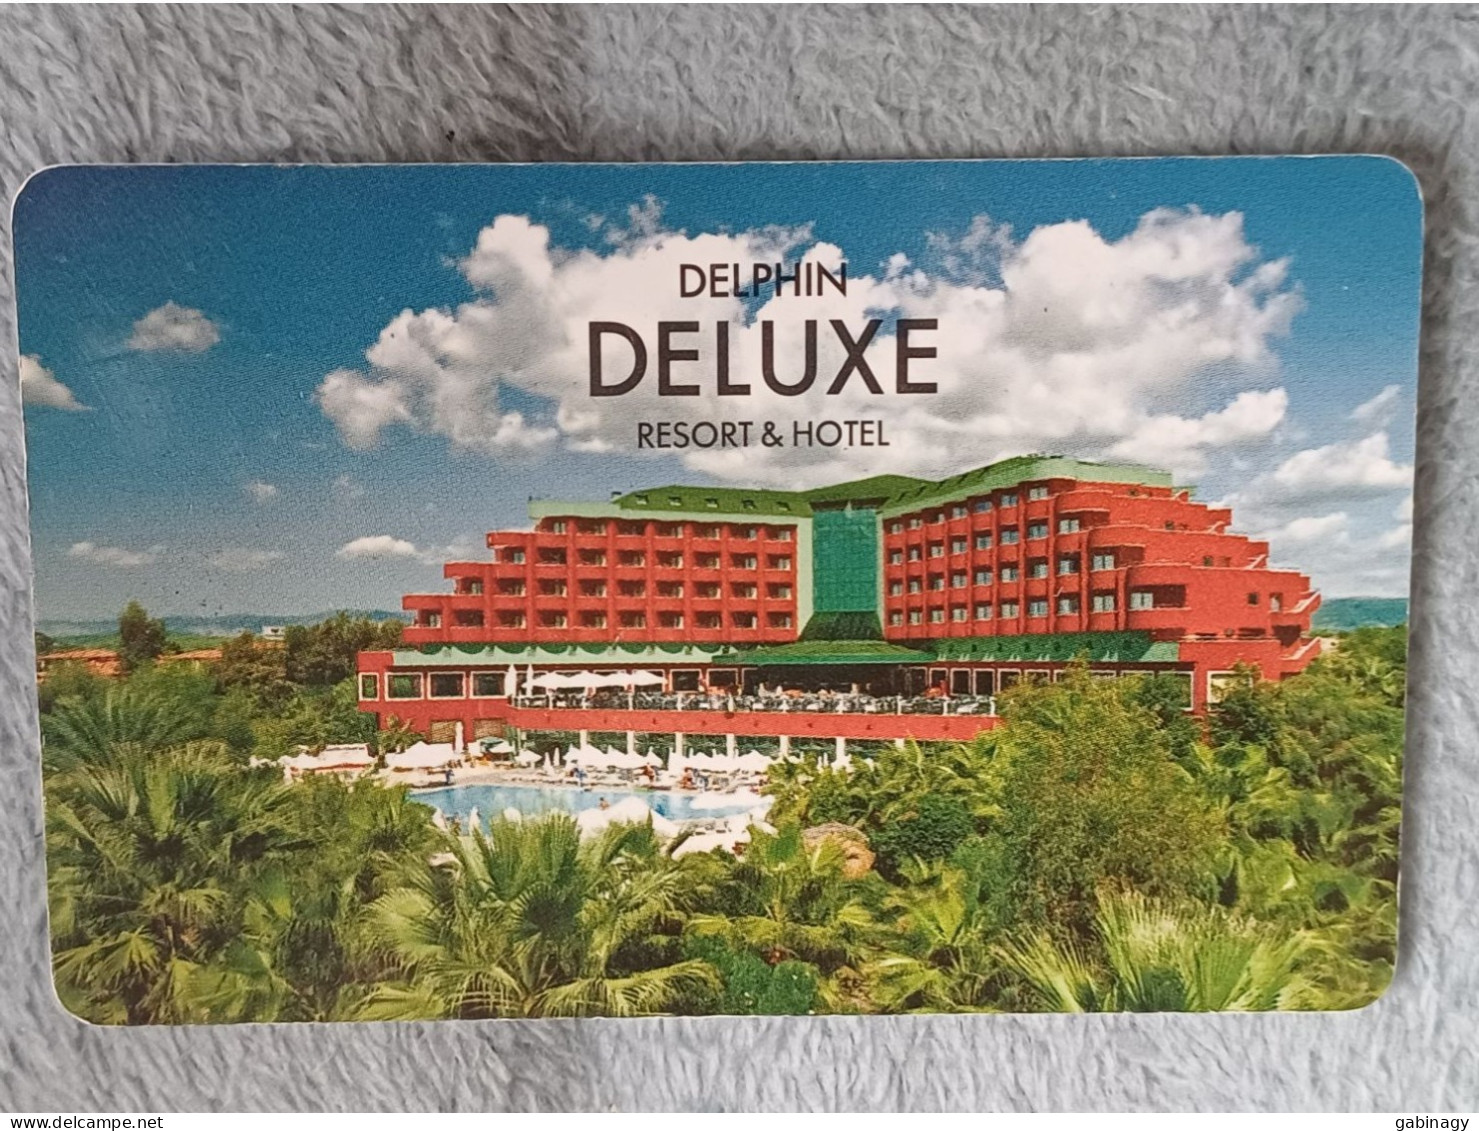 HOTEL KEYS - 2534 - TURKEY - DELPHINE DELUXE RESORT & HOTEL - Chiavi Elettroniche Di Alberghi